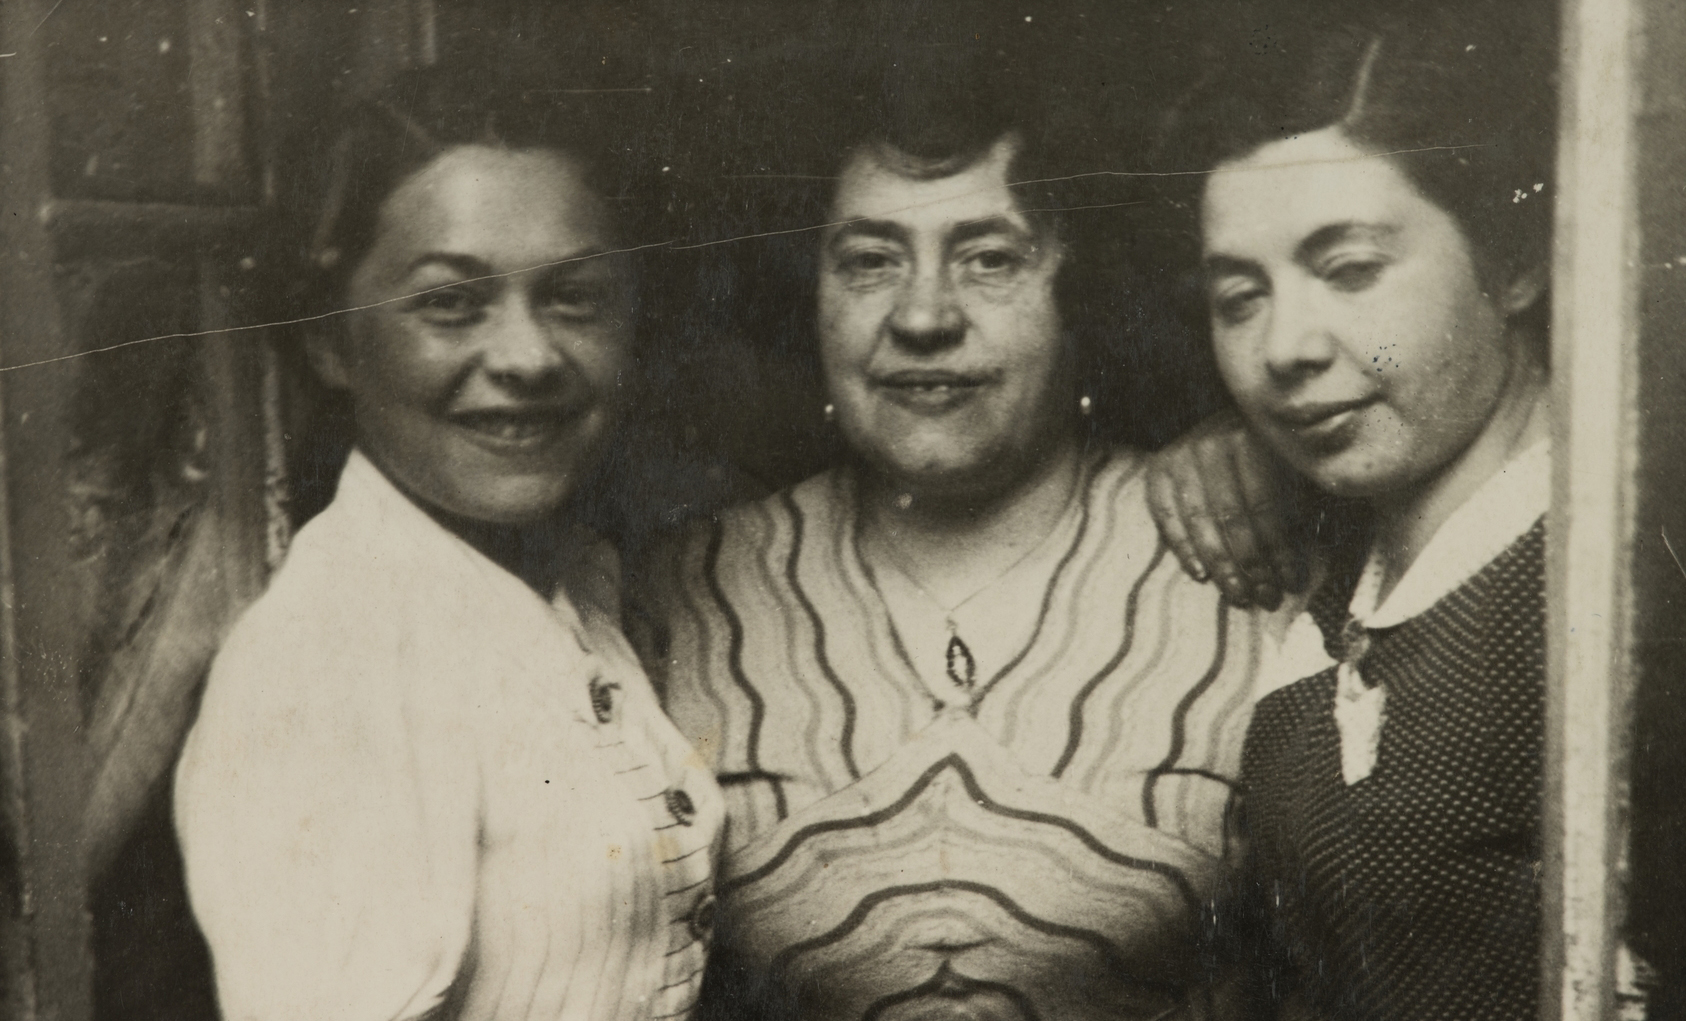 Fotografia z archiwum Muzeum POLIN. Przedstawia trzy kobiety, które pozują przytulone do siebie. Od lewej: Miriam Justman, Regina Justman, Paulina Włodawer